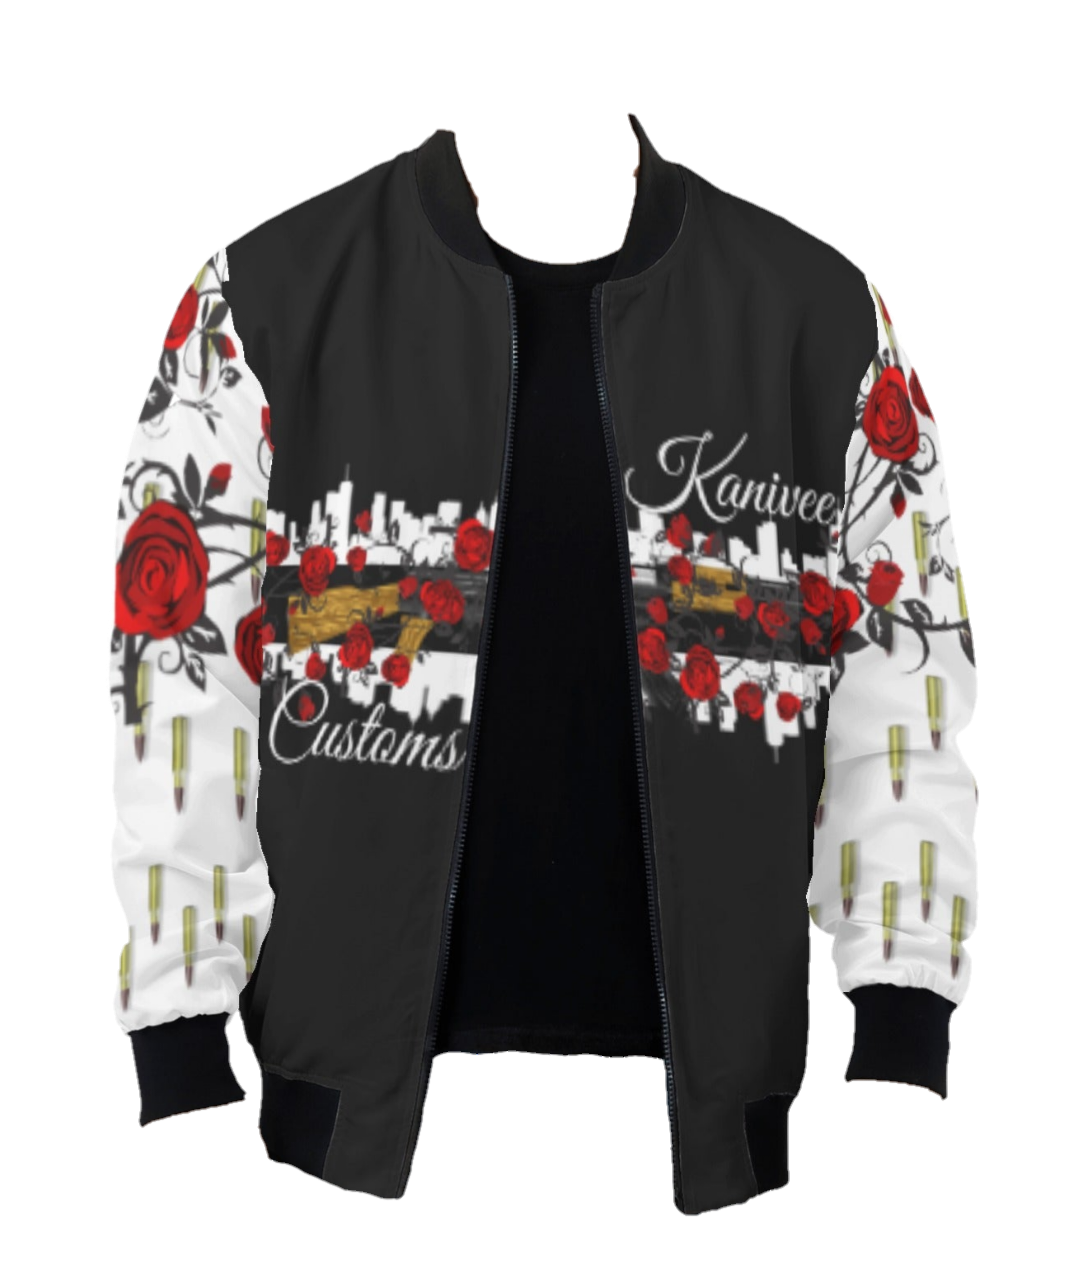 Hood Elegance Lightweight Jacket (Lv.1) - Kanivee Customs